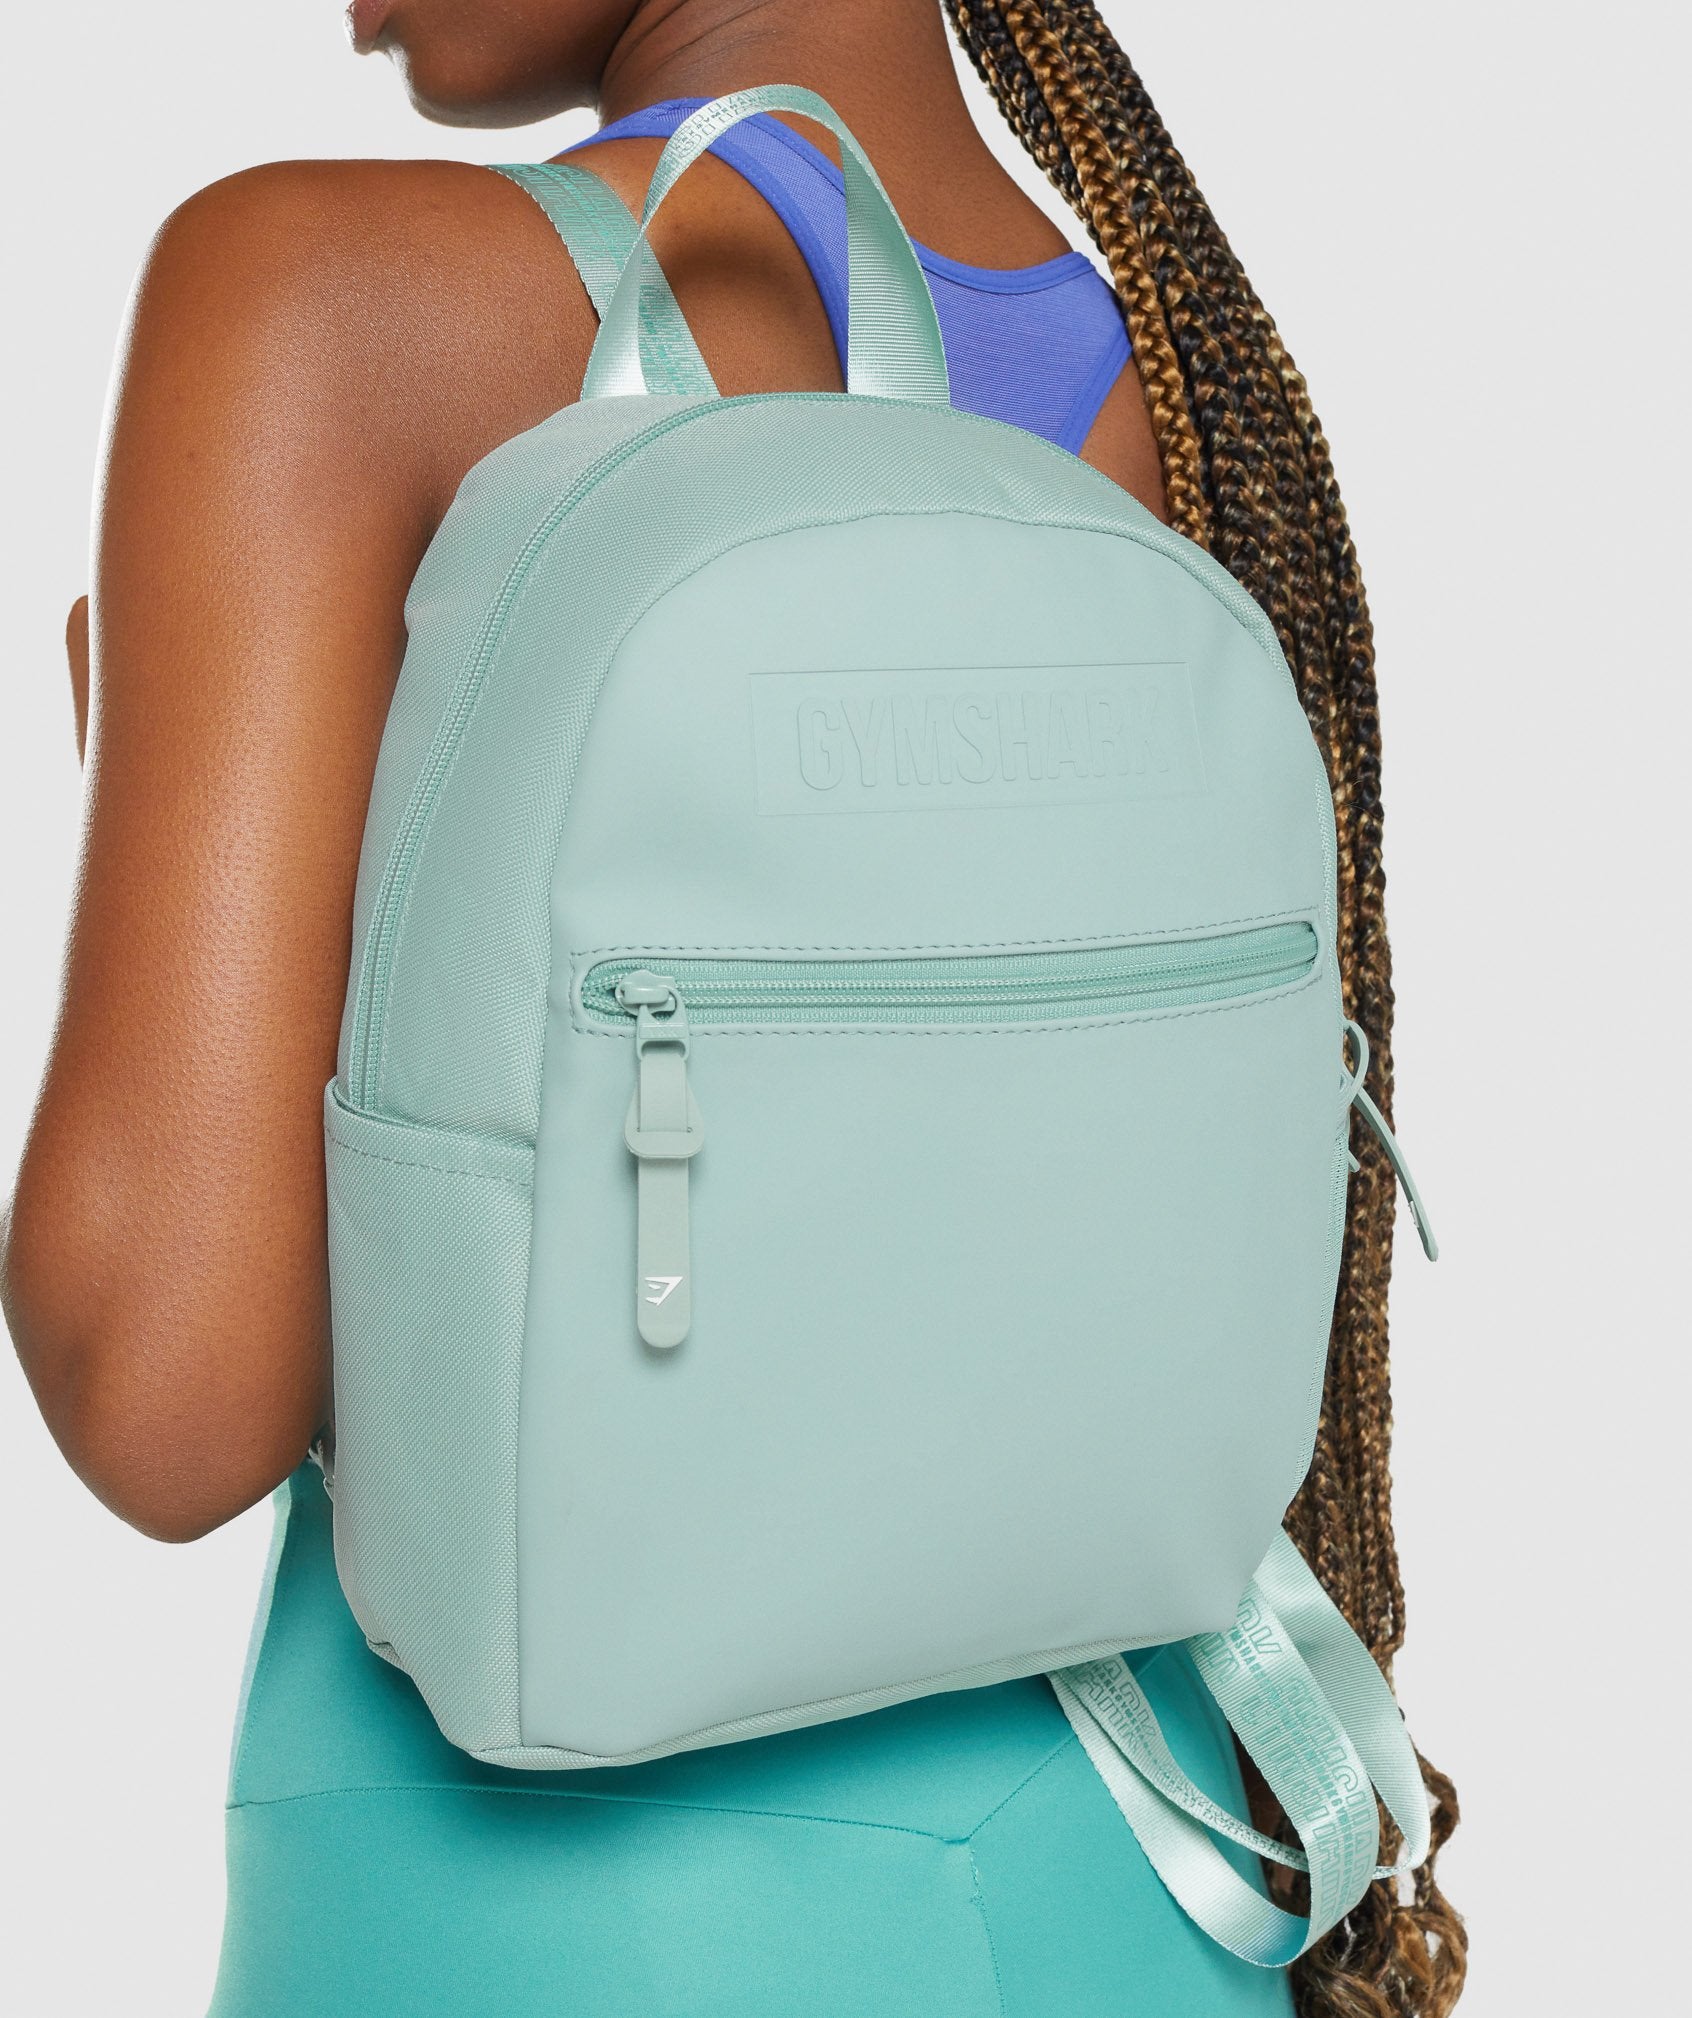 Gymshark Everyday Mini Backpack - Light Blue